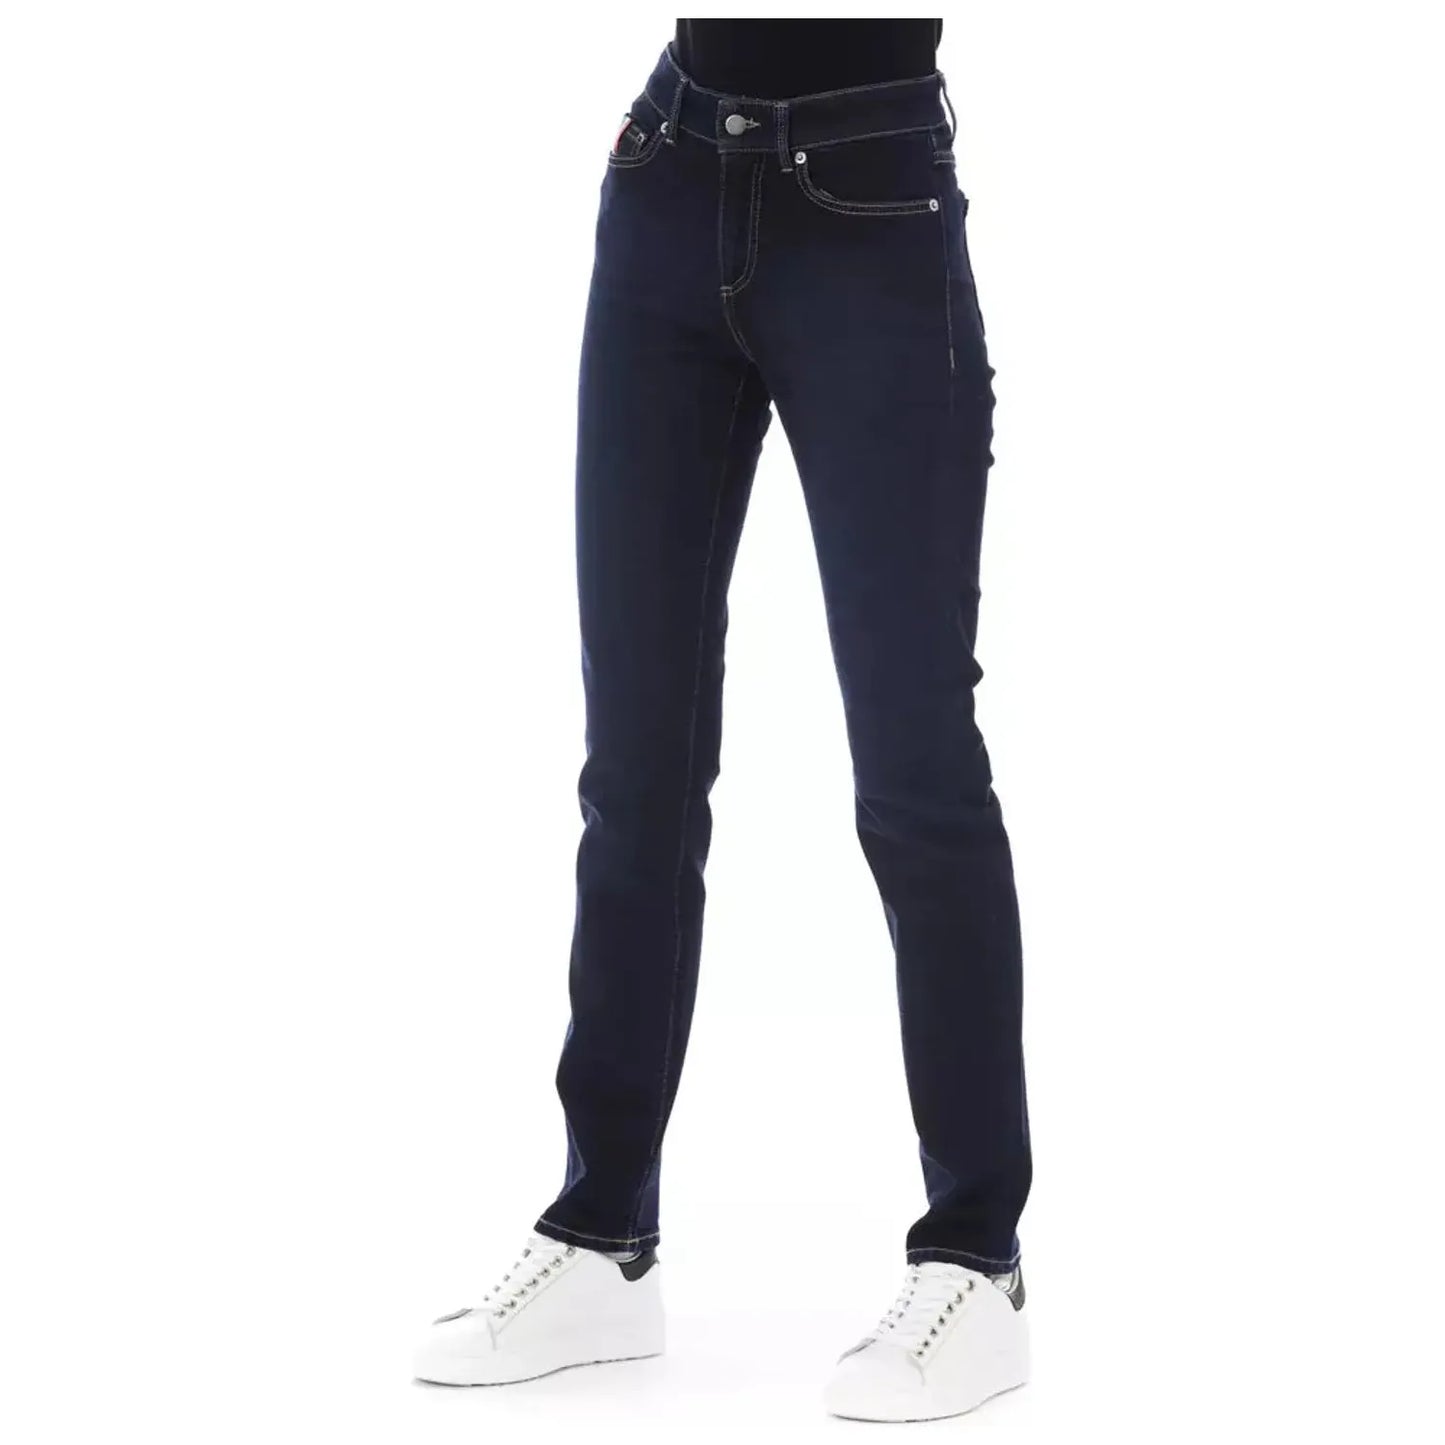 Baldinini Trend Chic Tricolor Pocket Designer Jeans blue-cotton-jeans-pant-159